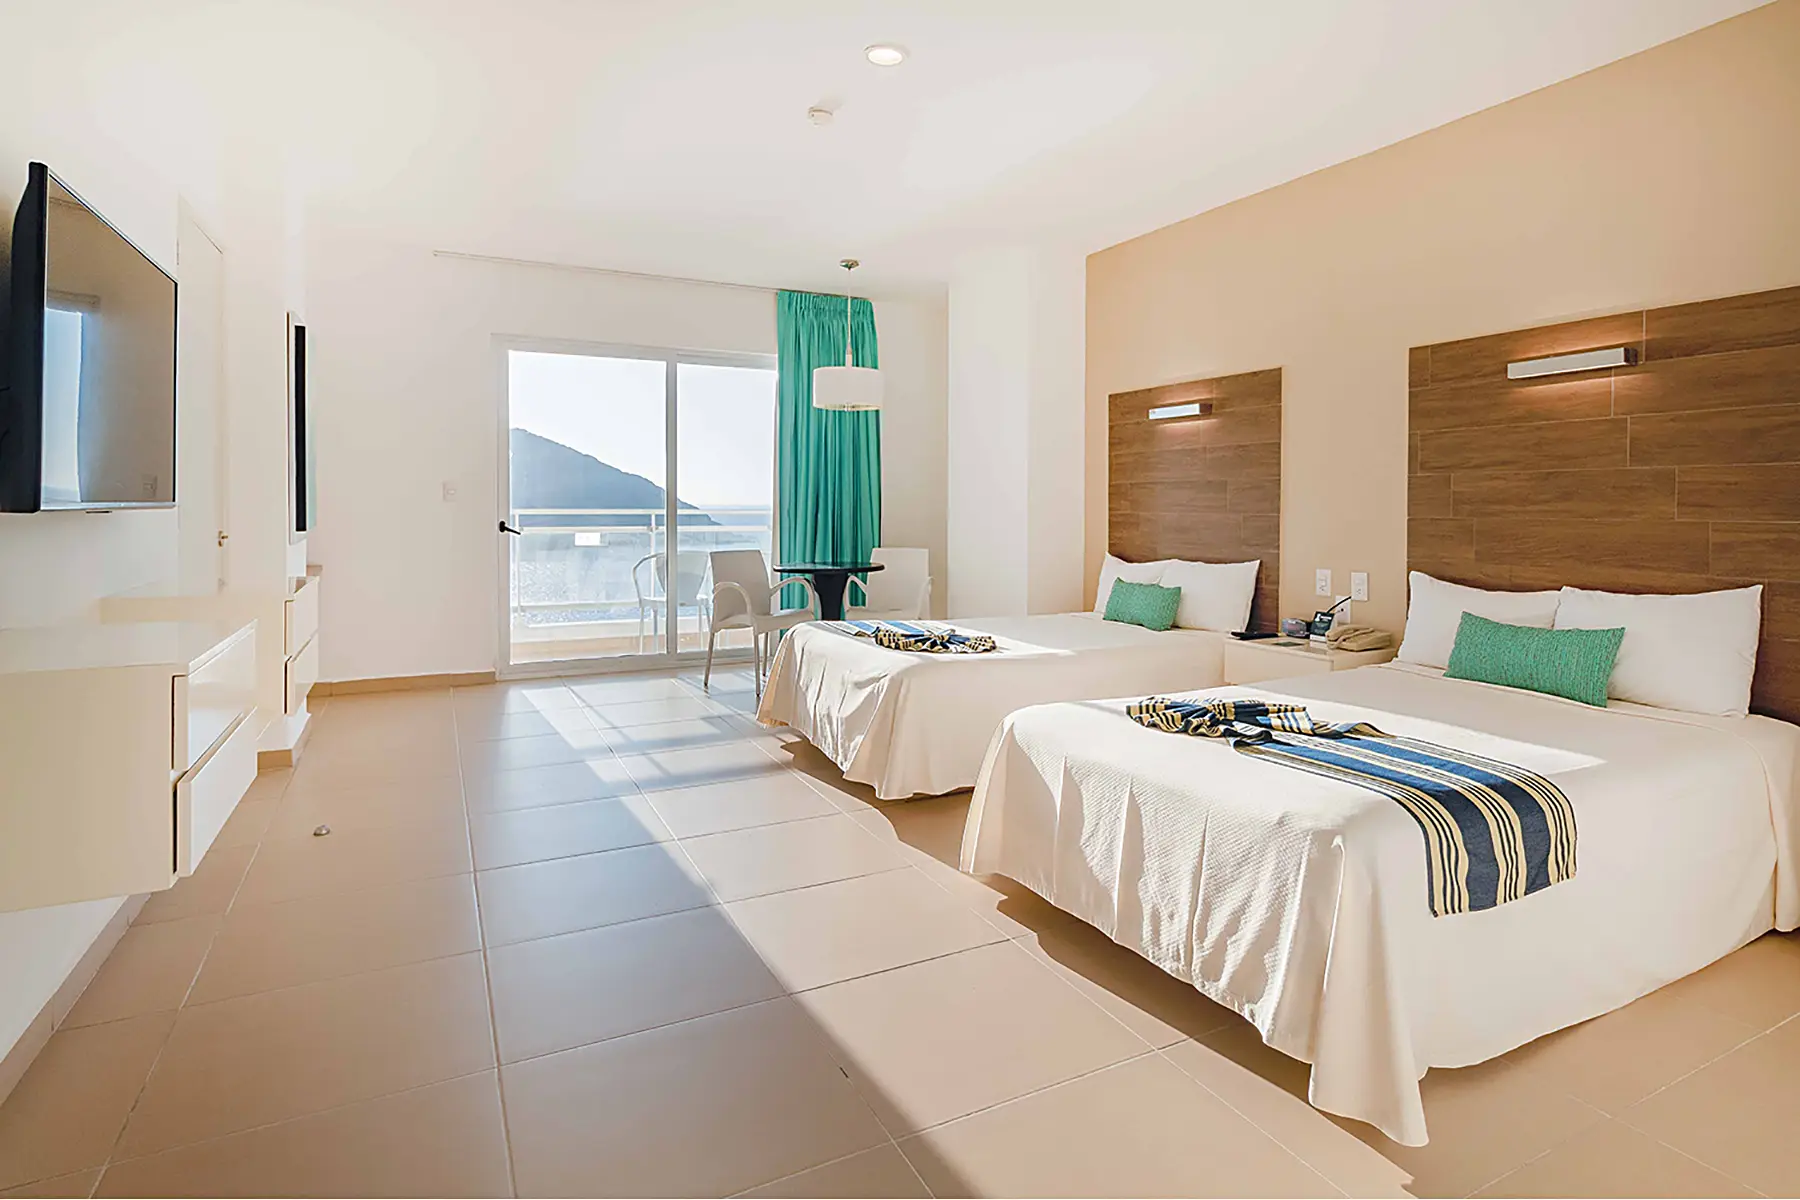 Habitación junior suite vista al mar, en Zona Dorada Mazatlán, dos camas, tv, mesa con dos sillas, mobiliario,luminaria, hotel pacific palace